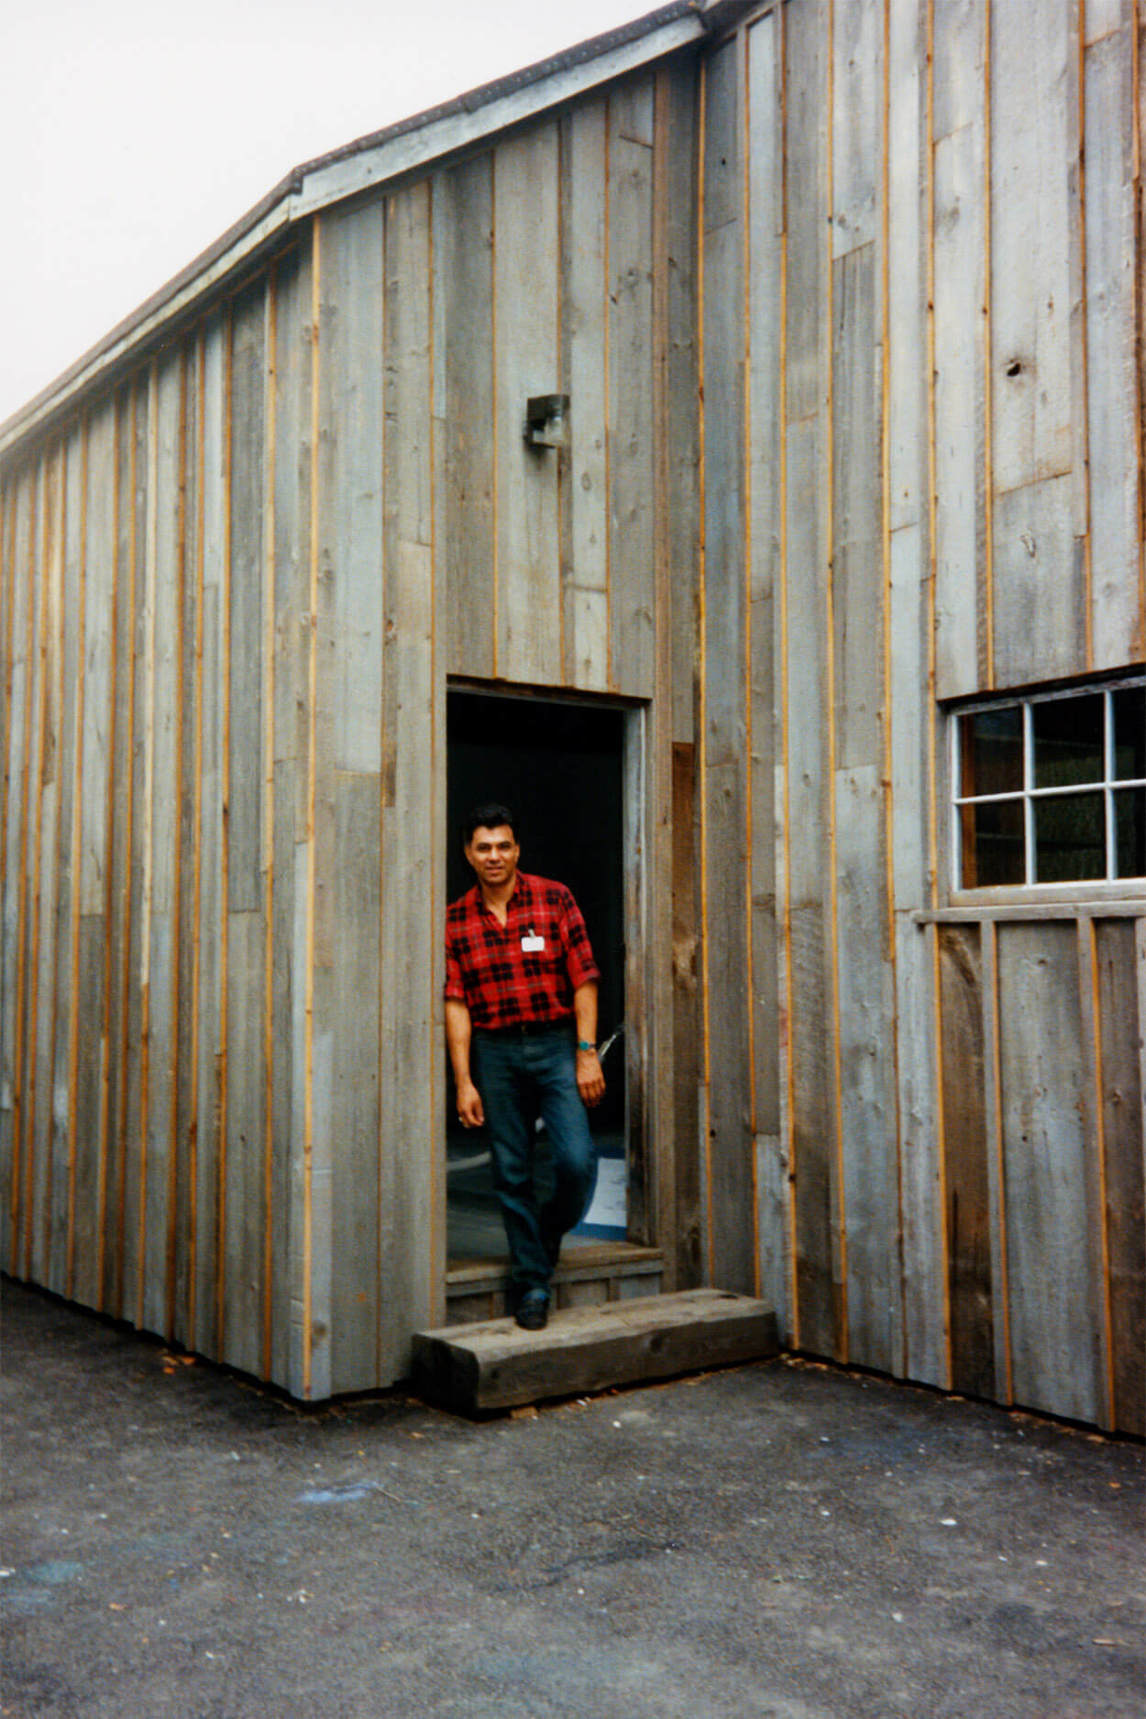 Robert Houle in the doorway of Tom Thomson’s shack, 1989